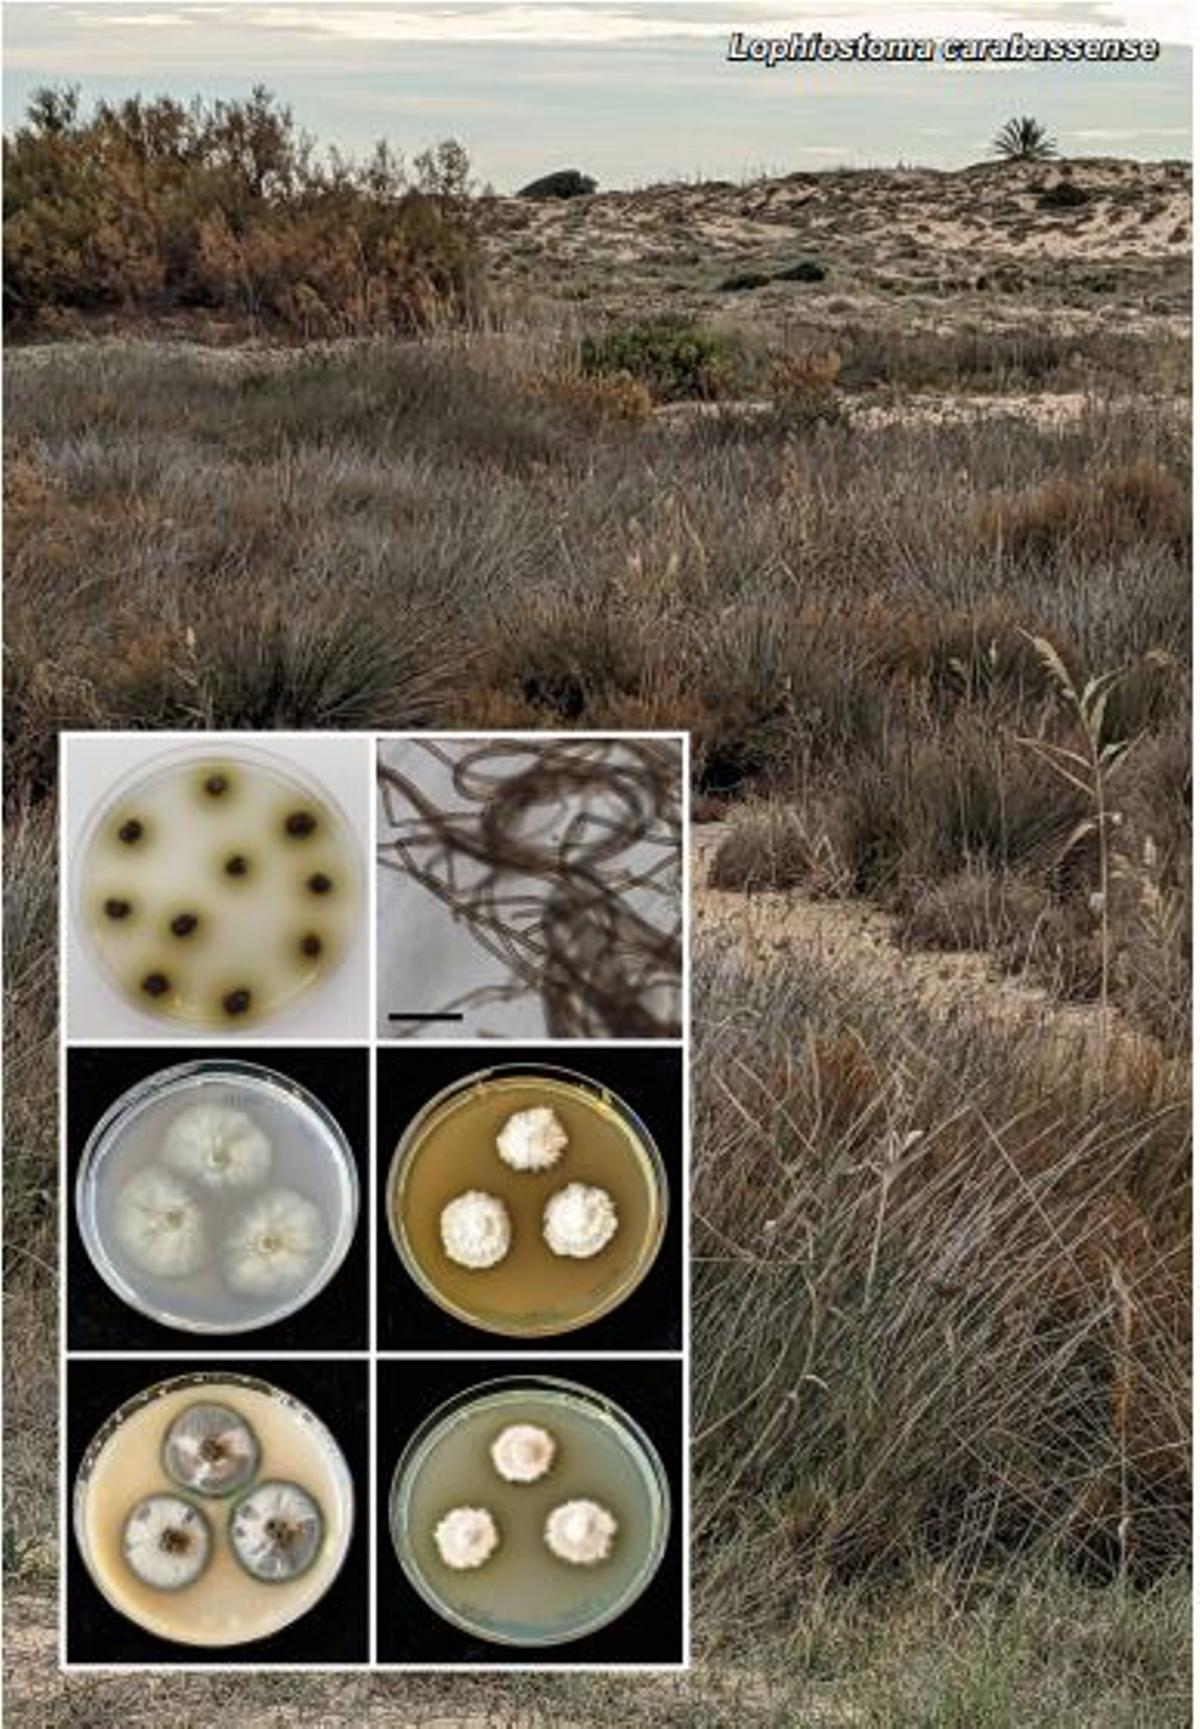 Imagen de la playa y de los hongos extraída de la publicación realizada por los dos científicos